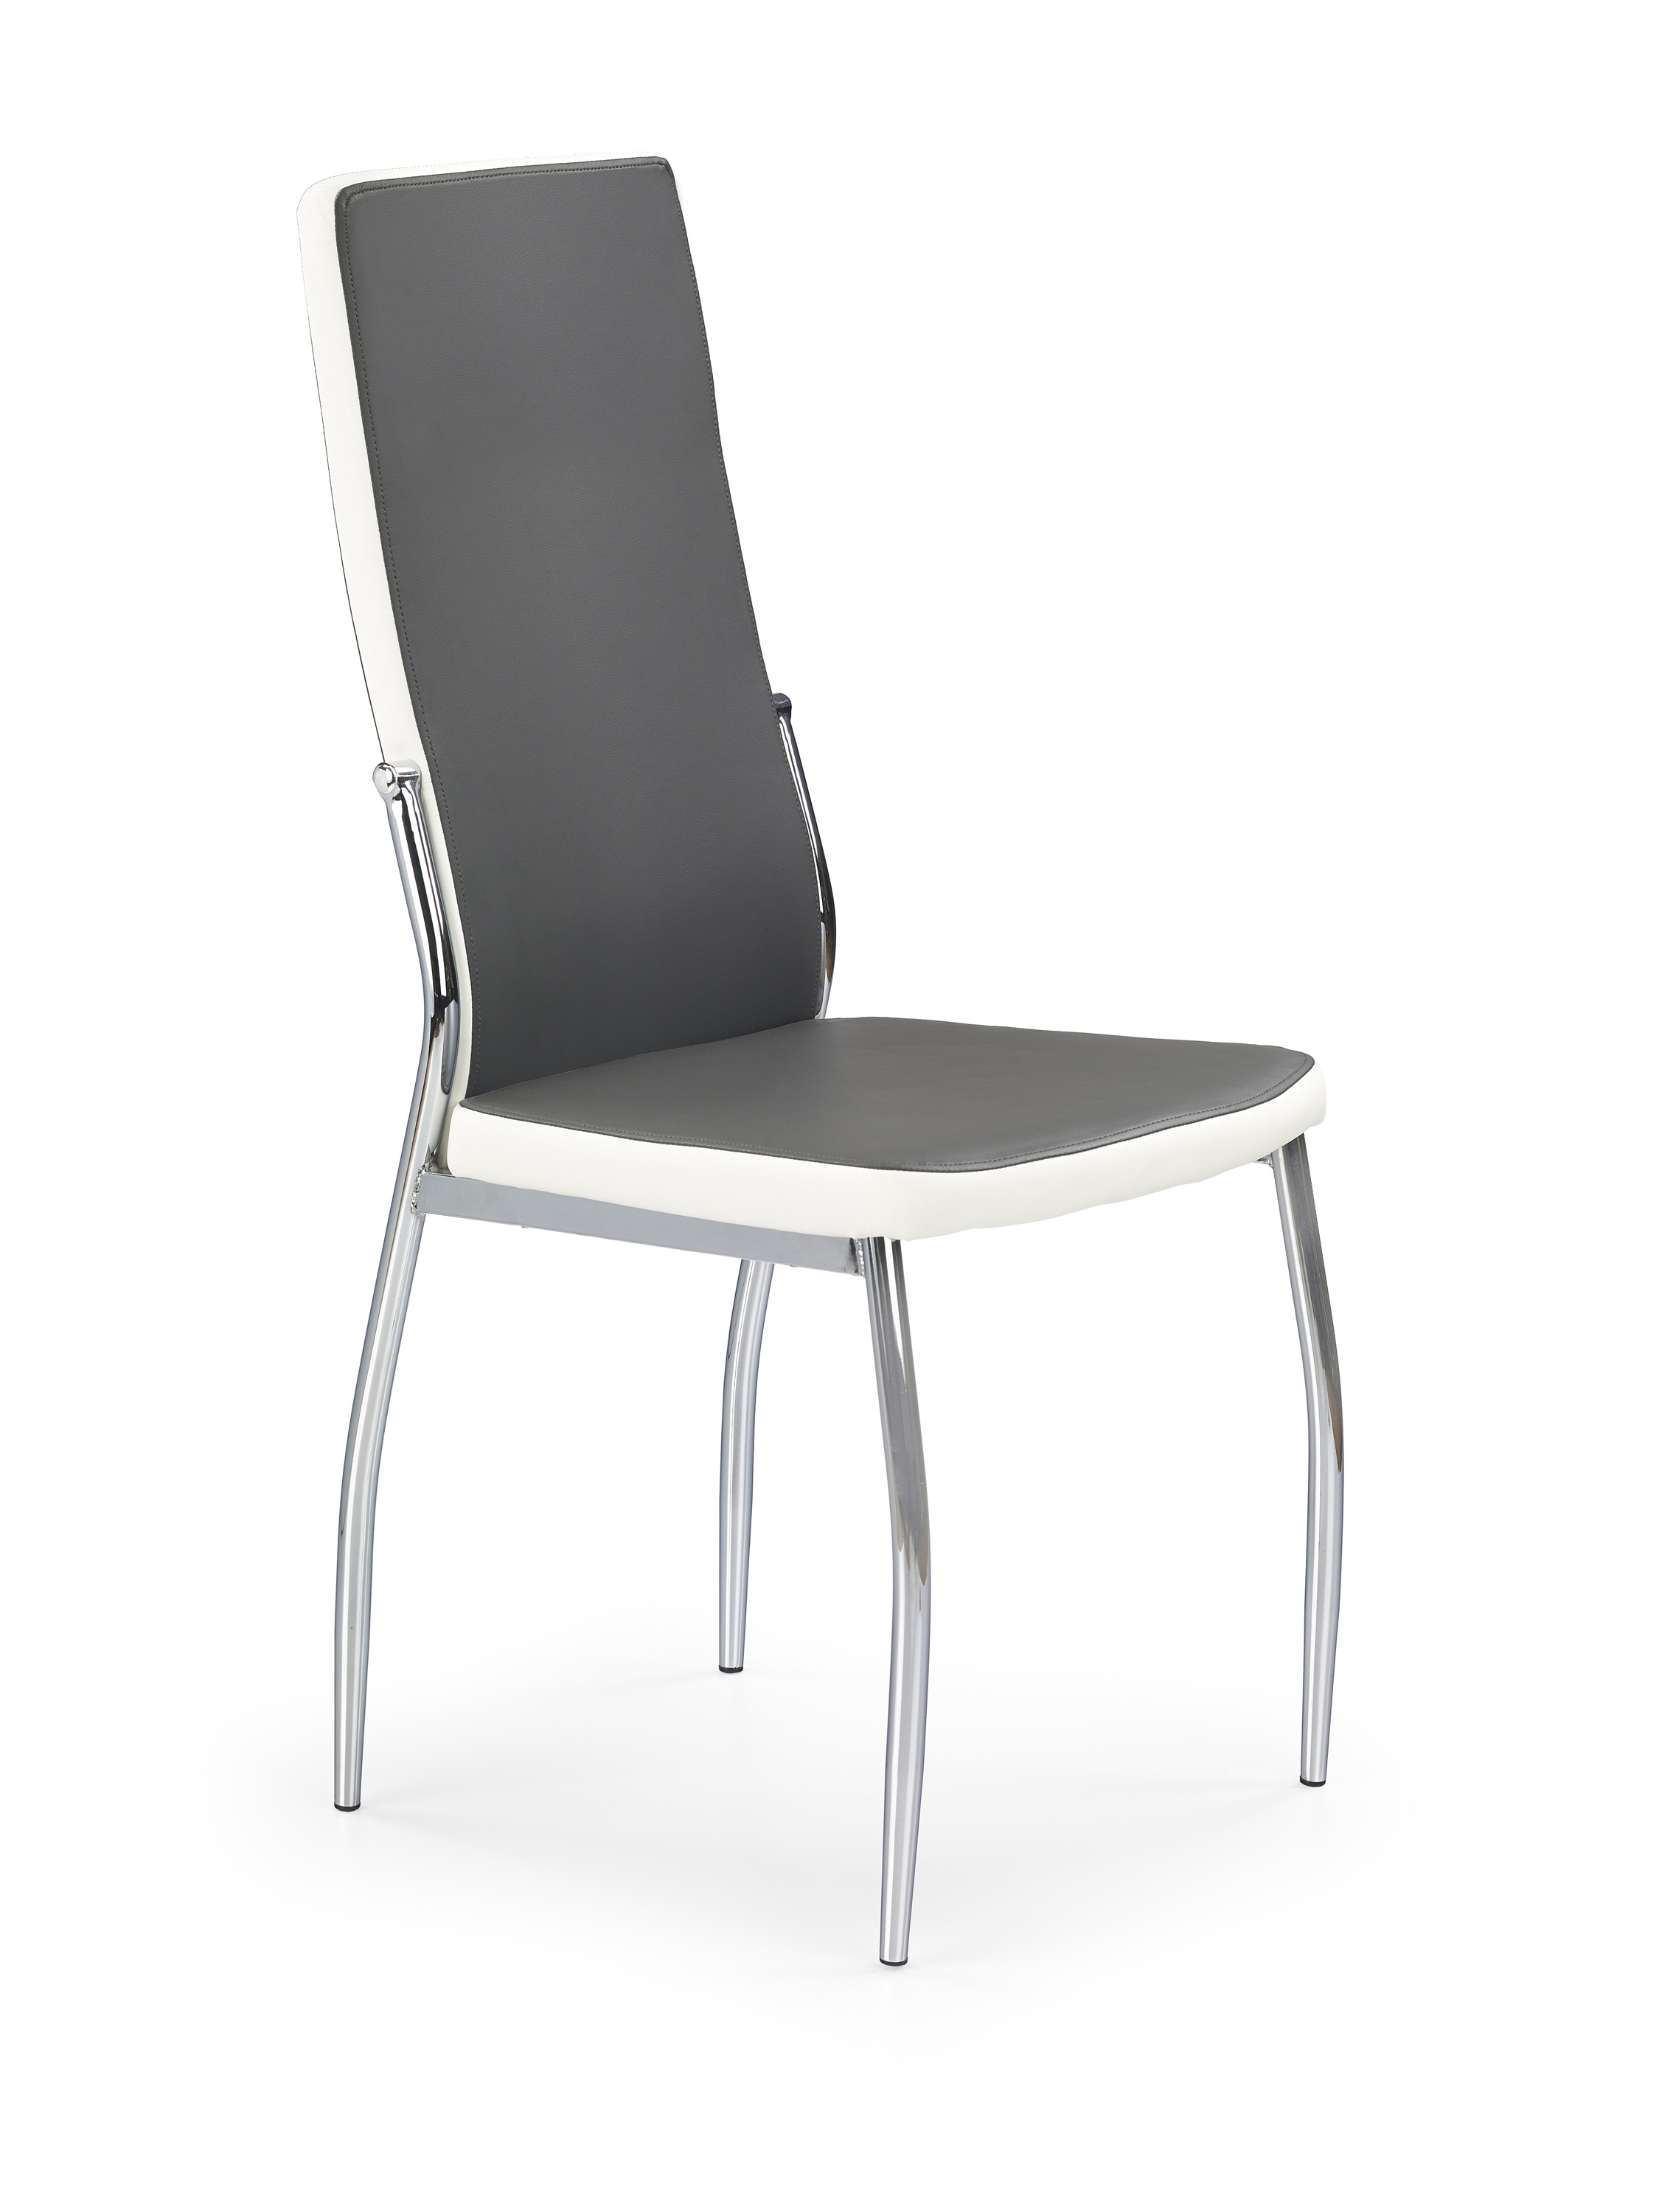 K210 krzesło popiel / biały k210 krzesło popiel / biały